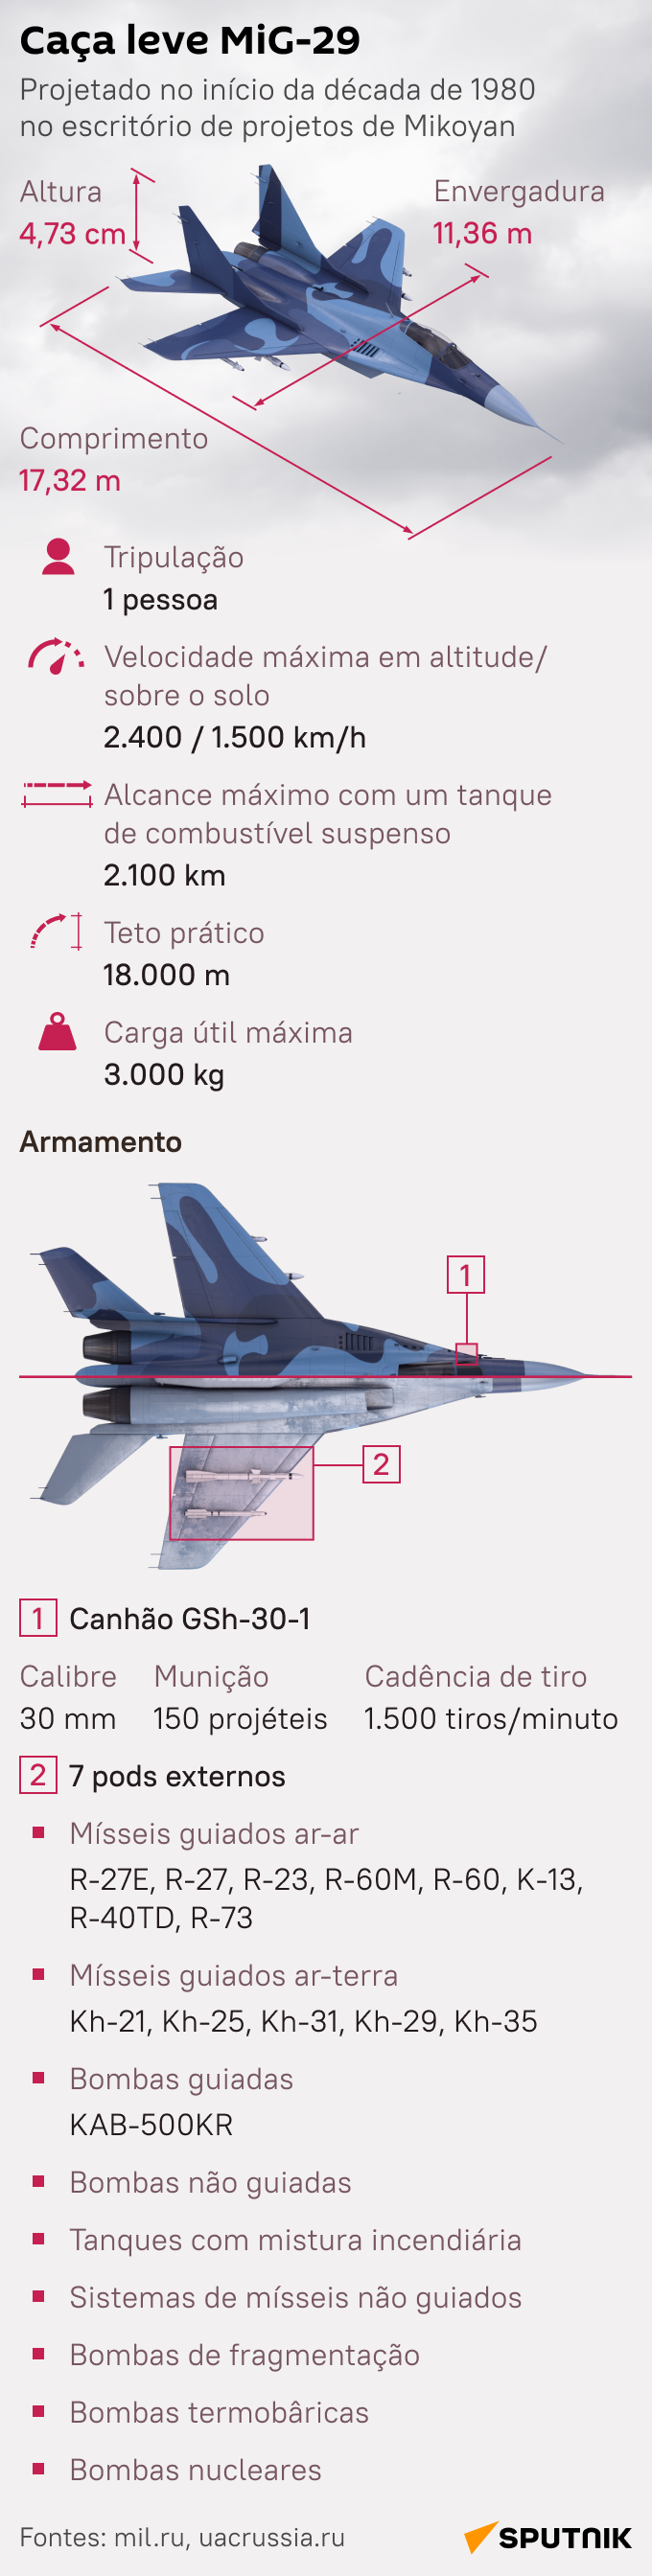 Conheça o MiG-29, caça russo que compete com F-16 dos EUA - Sputnik Brasil